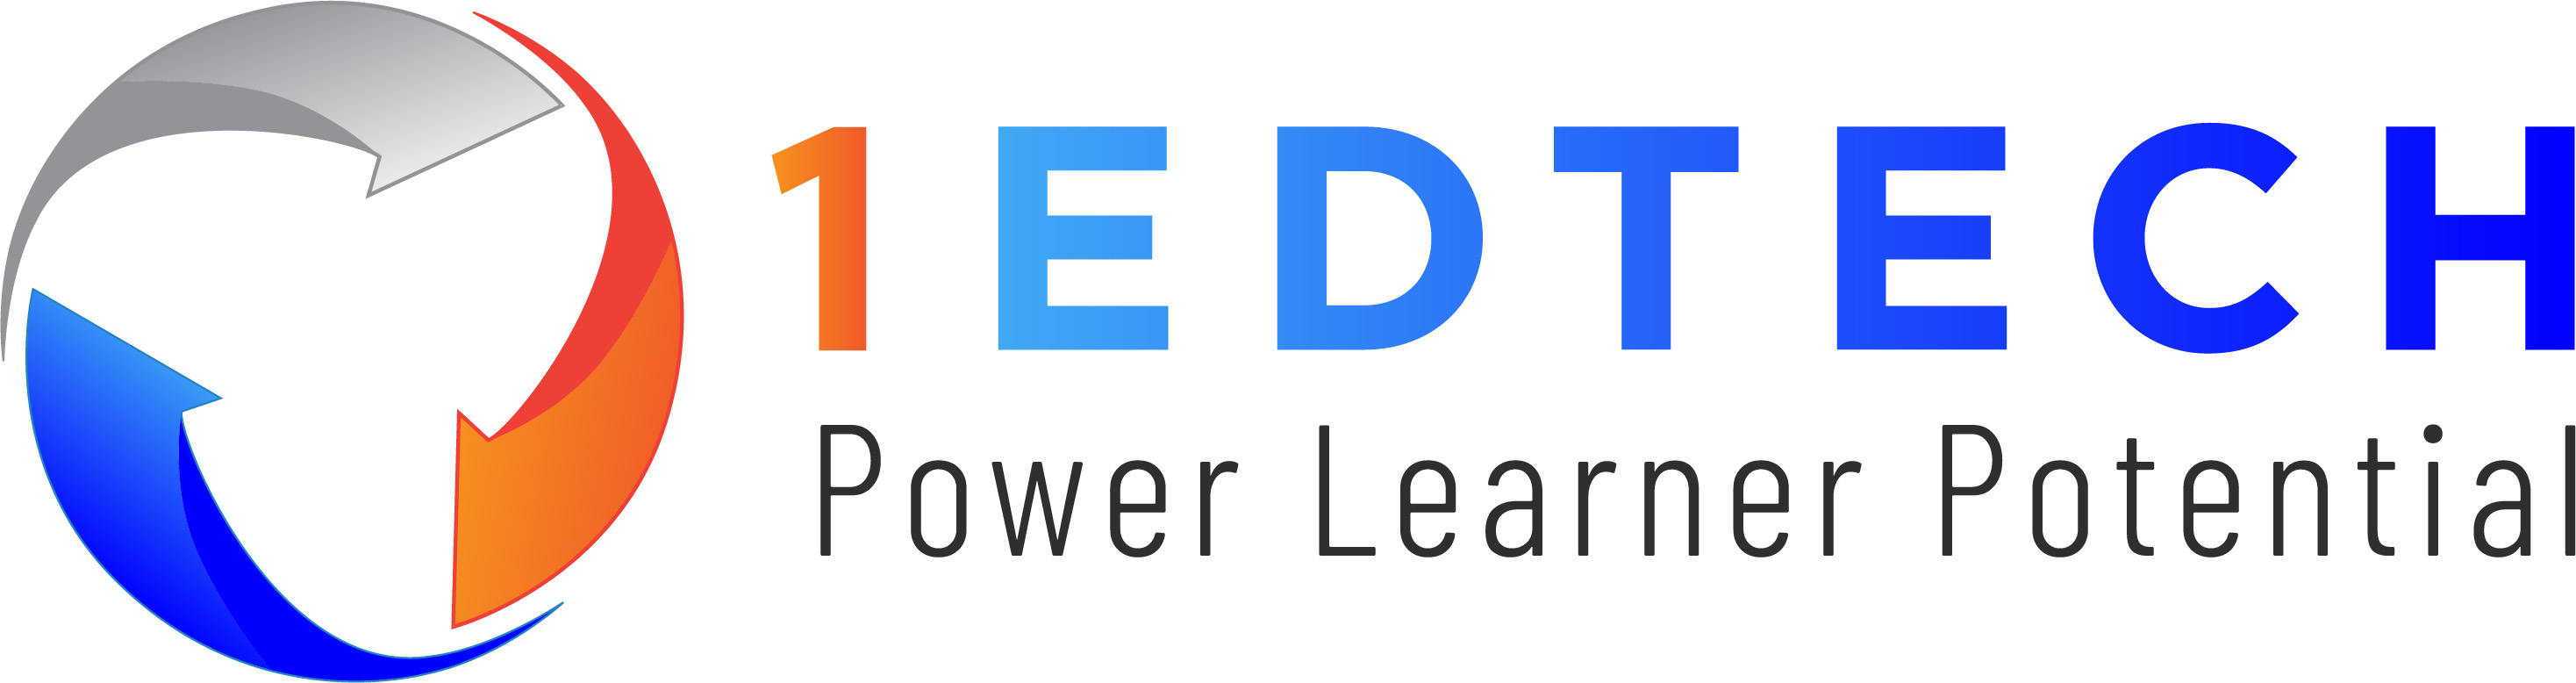 1EdTech logo